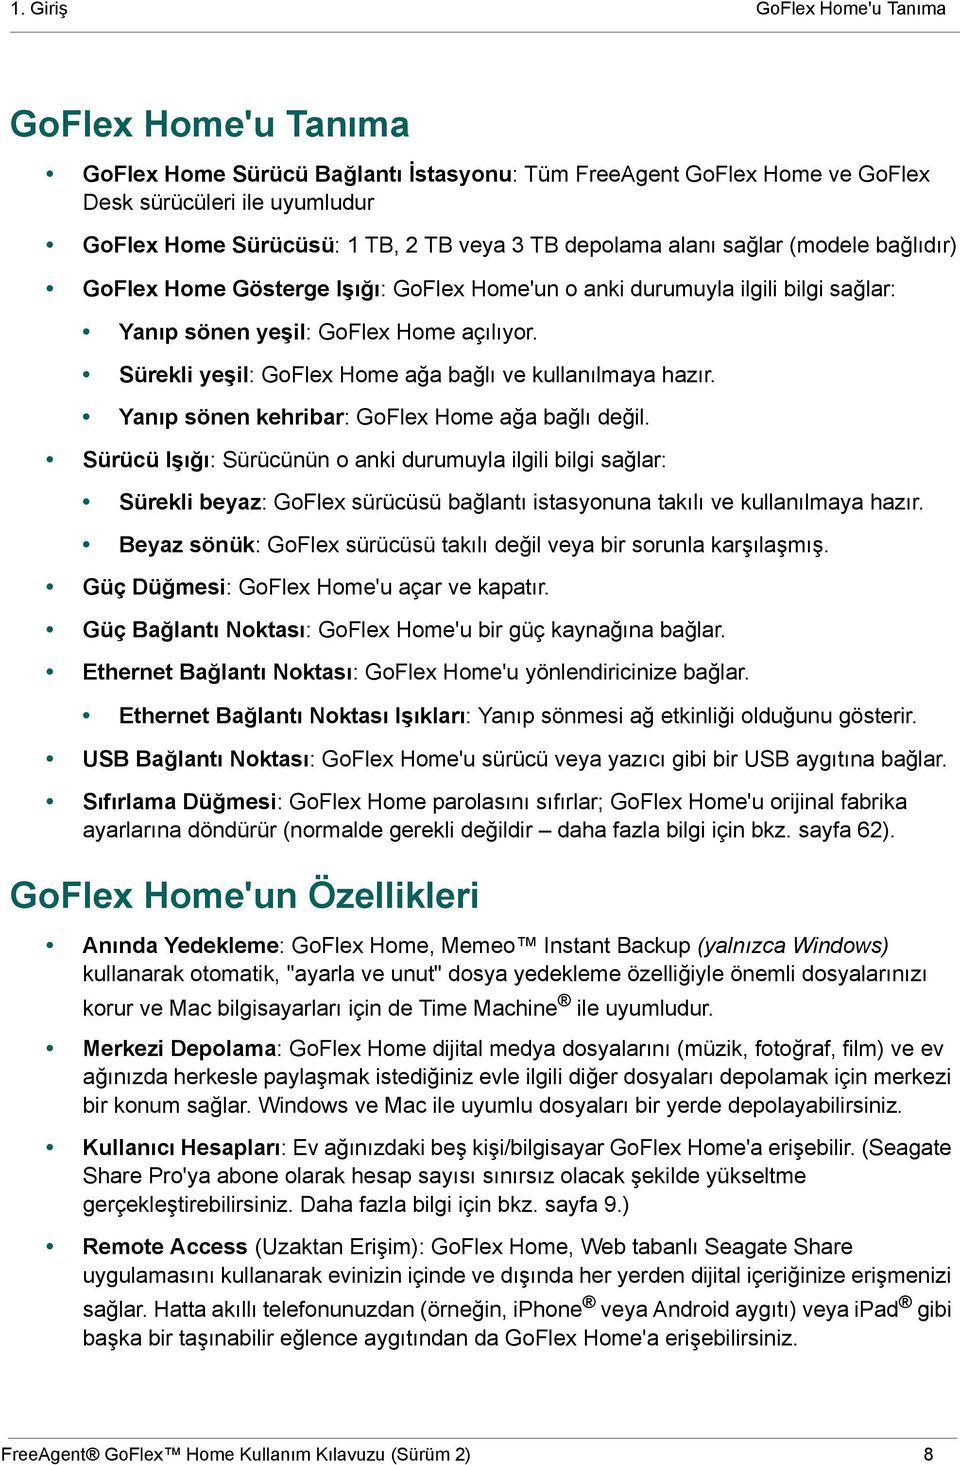 Sürekli yeşil: GoFlex Home ağa bağlı ve kullanılmaya hazır. Yanıp sönen kehribar: GoFlex Home ağa bağlı değil.